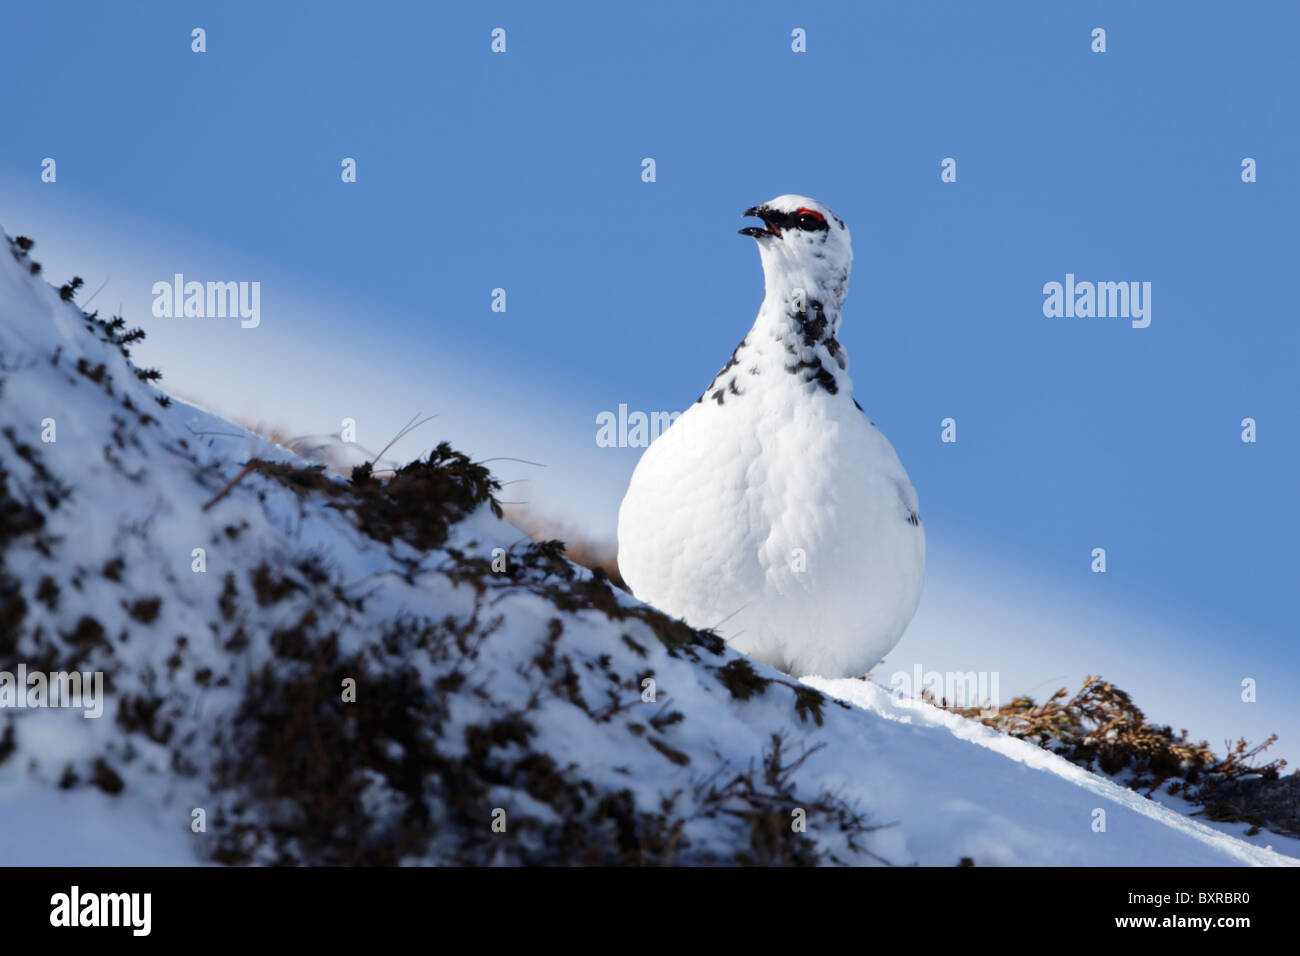 Homme Lagoups rock ptarmigan (muta) montrant plumage hivernal appelant sur une pente de neige colline couverte avec ciel bleu clair derrière Banque D'Images